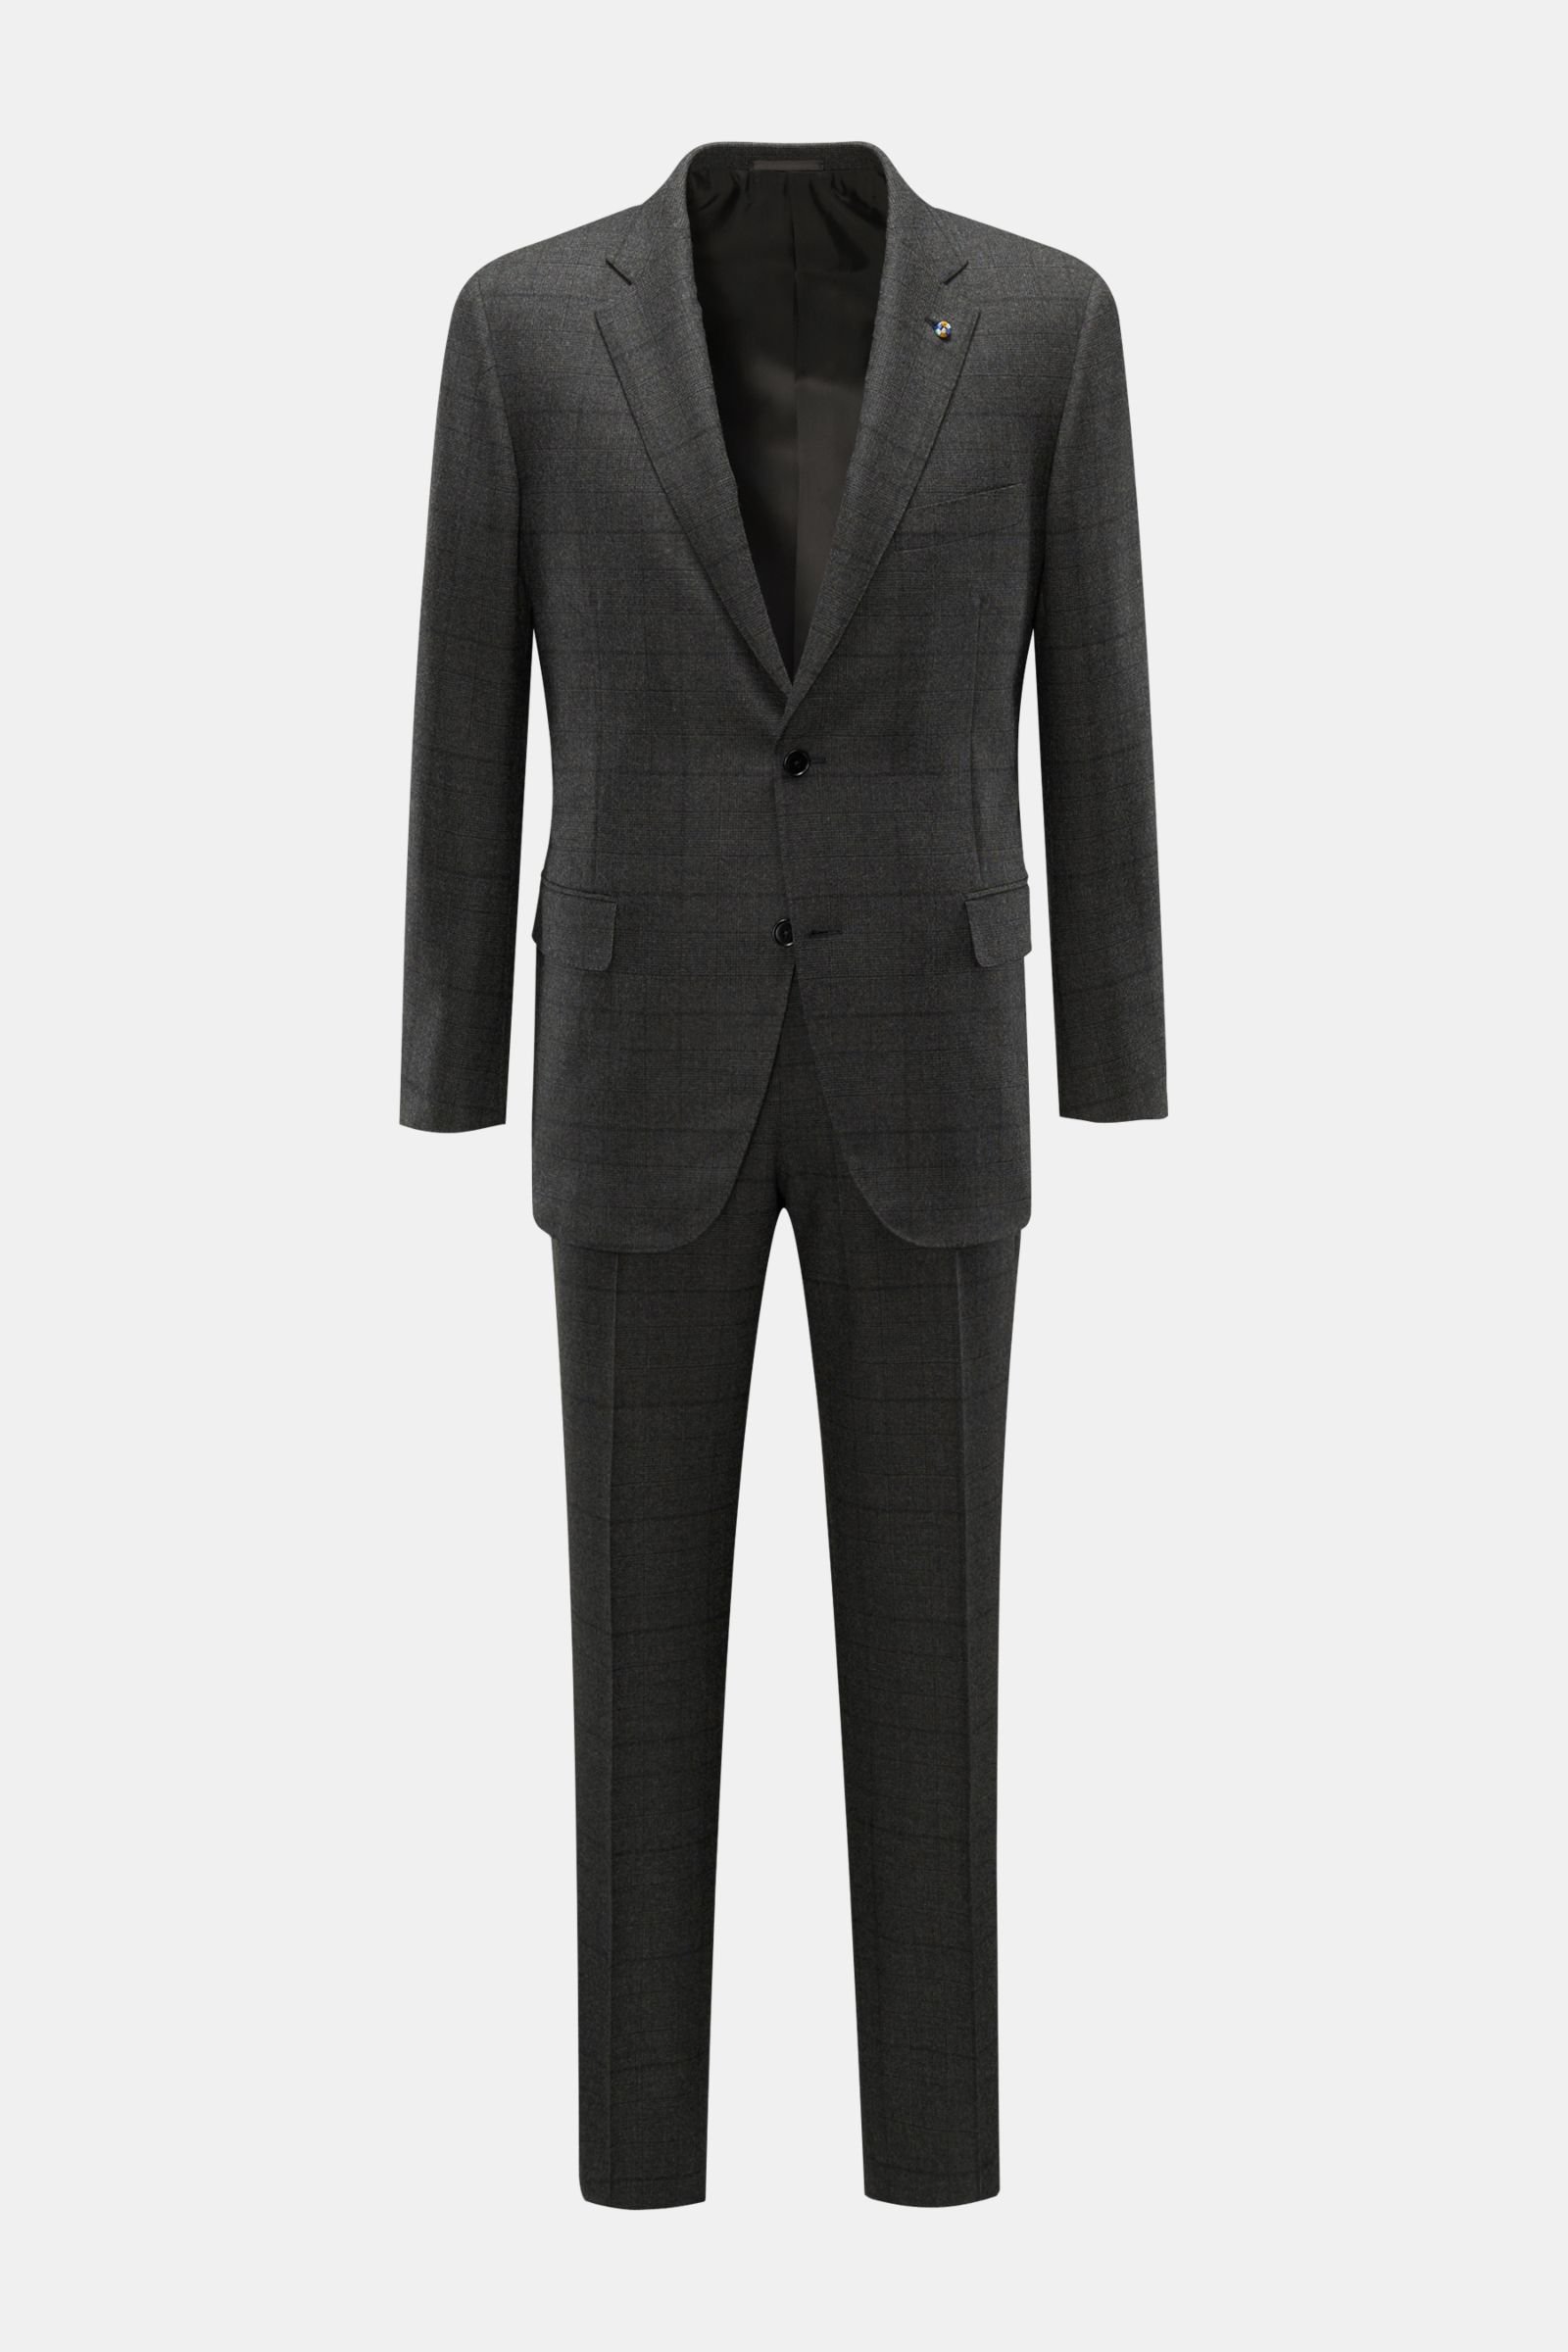 Suit 'Drop 7' dark grey checked